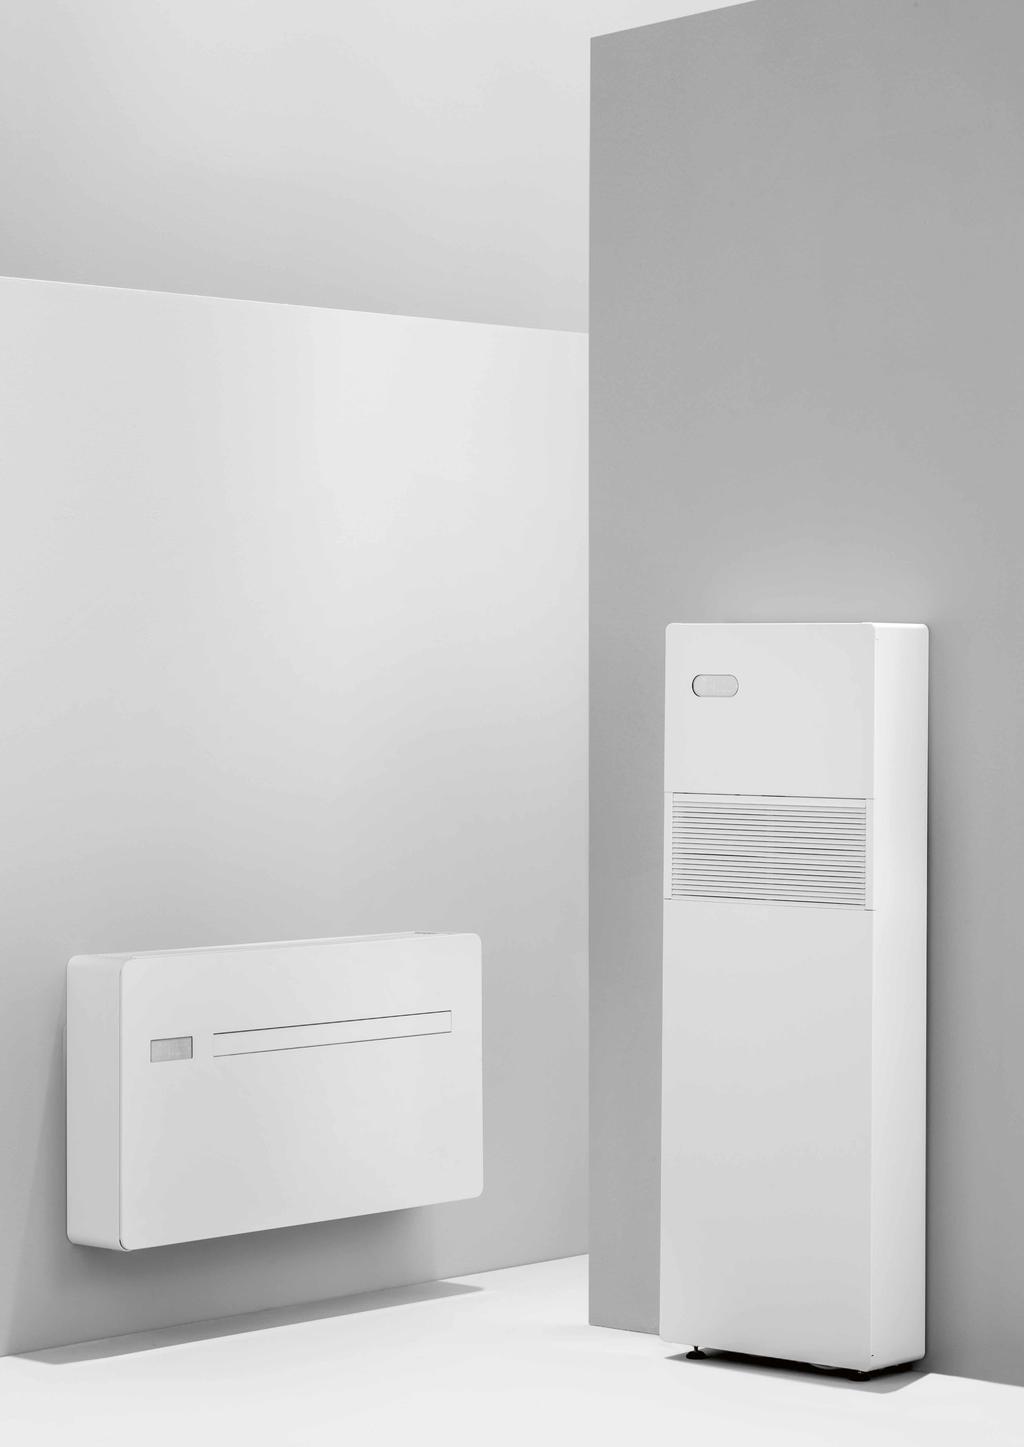 Vorzüge dezentrales Heizen mit Wärmepumpe (Energieklasse A) dezentrale Klimaanlage ohne Ausseneinheit (Energieklasse A+)